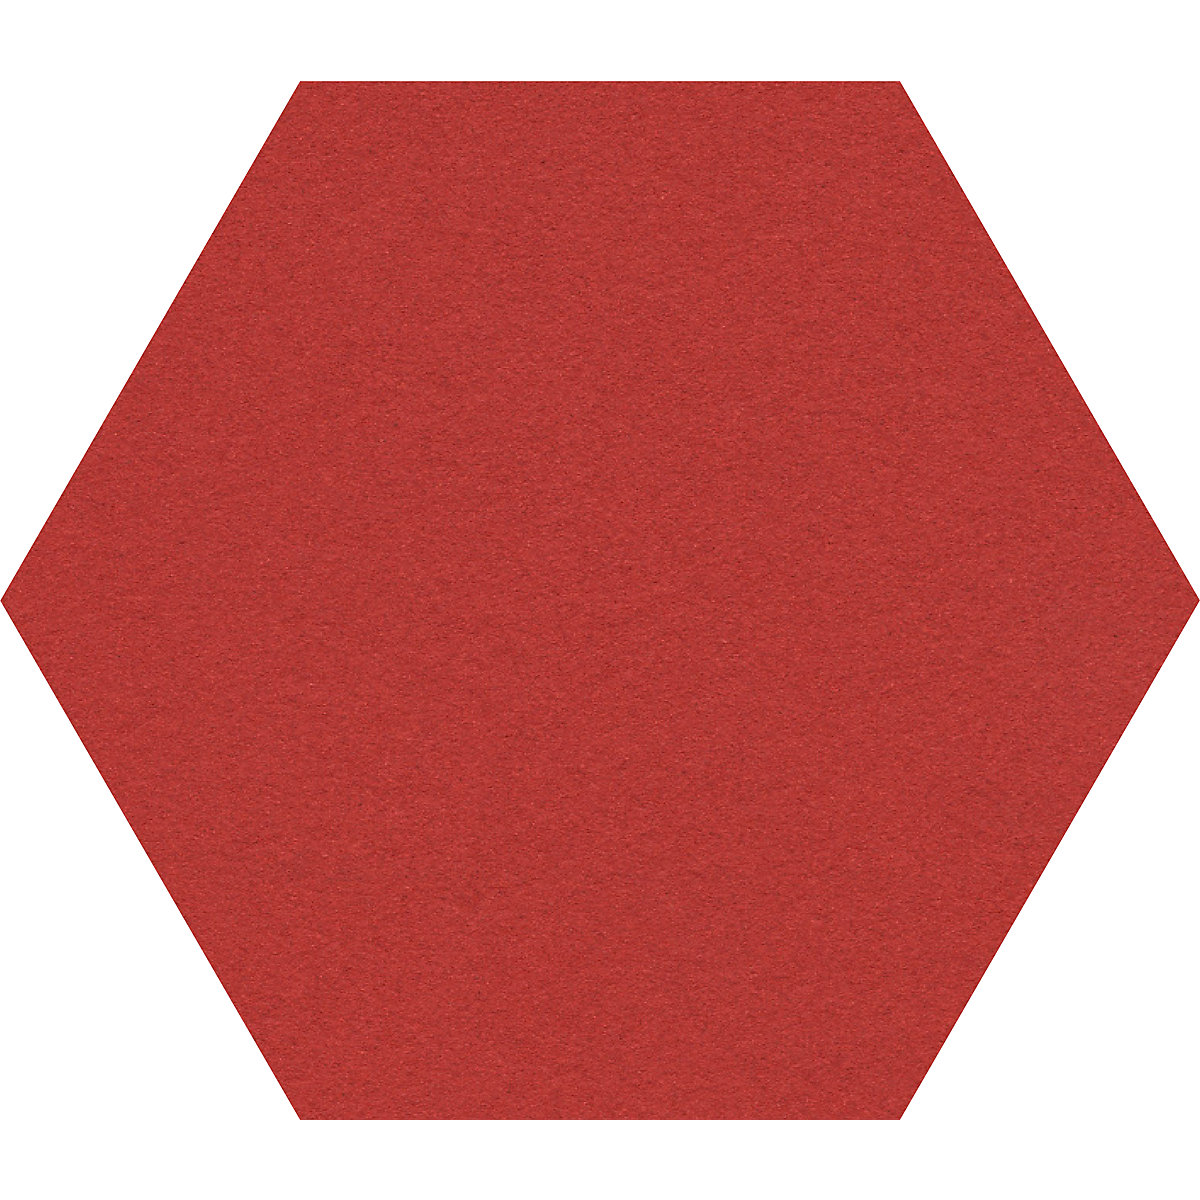 Design prikbord zeshoekig – Chameleon, kurk, b x h = 600 x 600 mm, rood-35